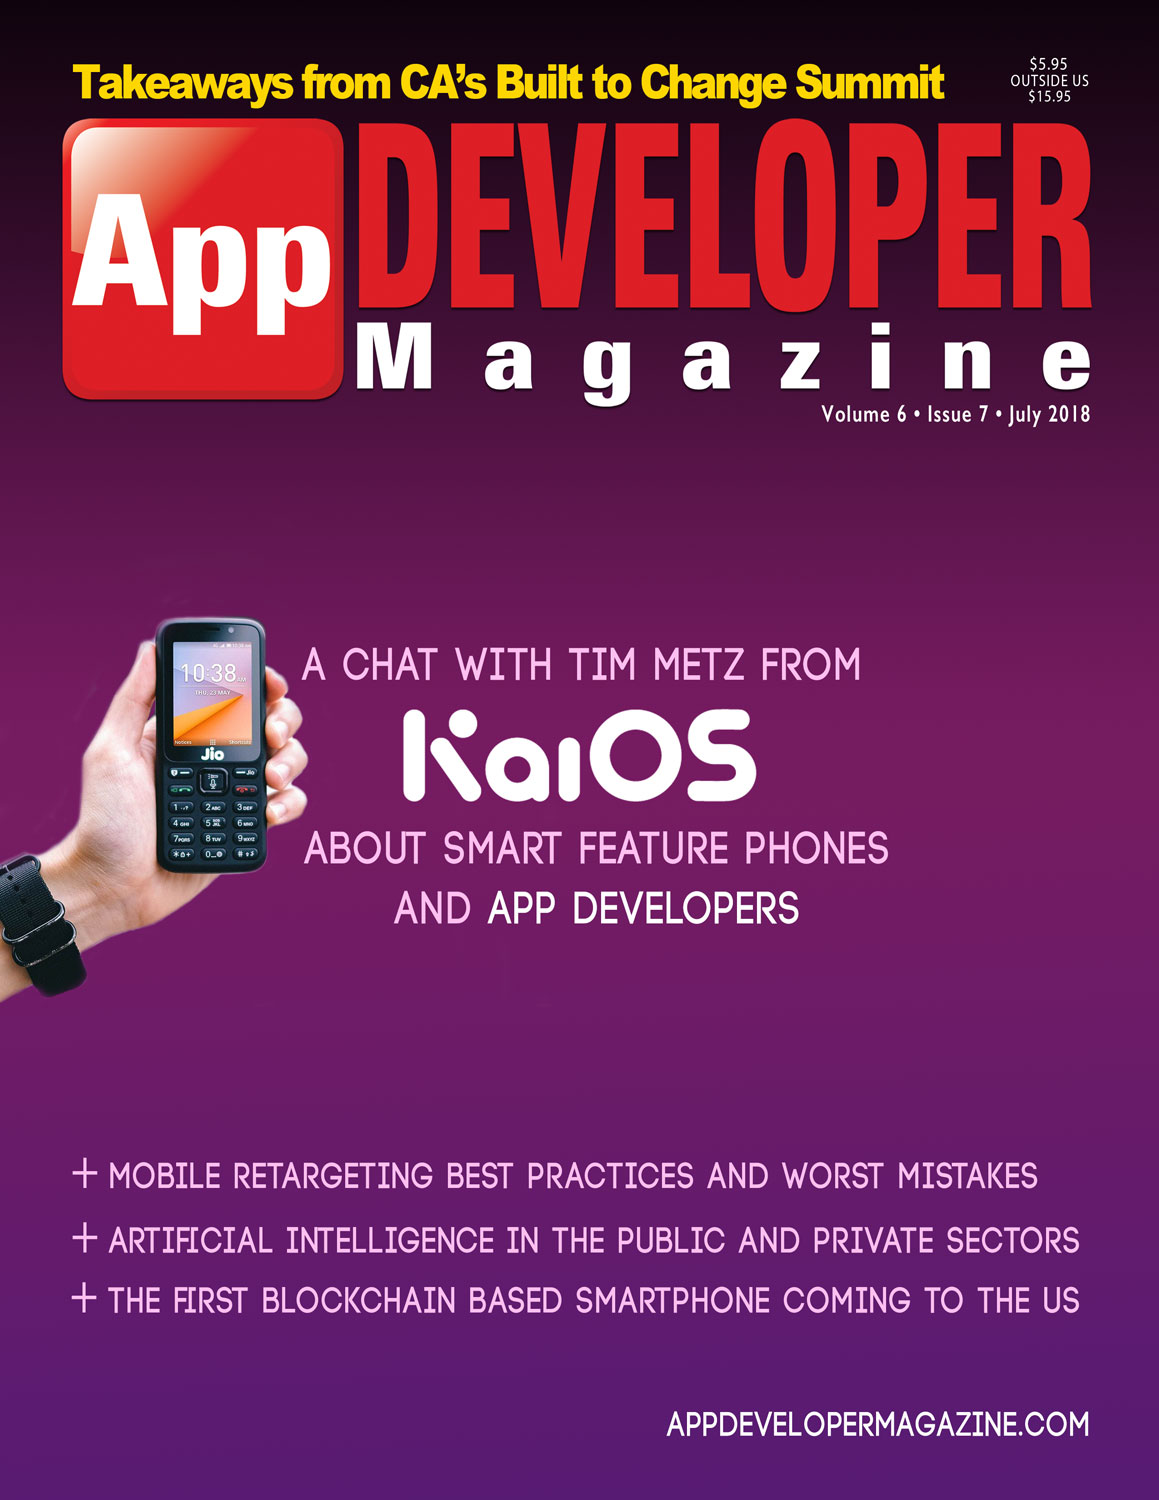 App Developer Magazine July 2018 Cover